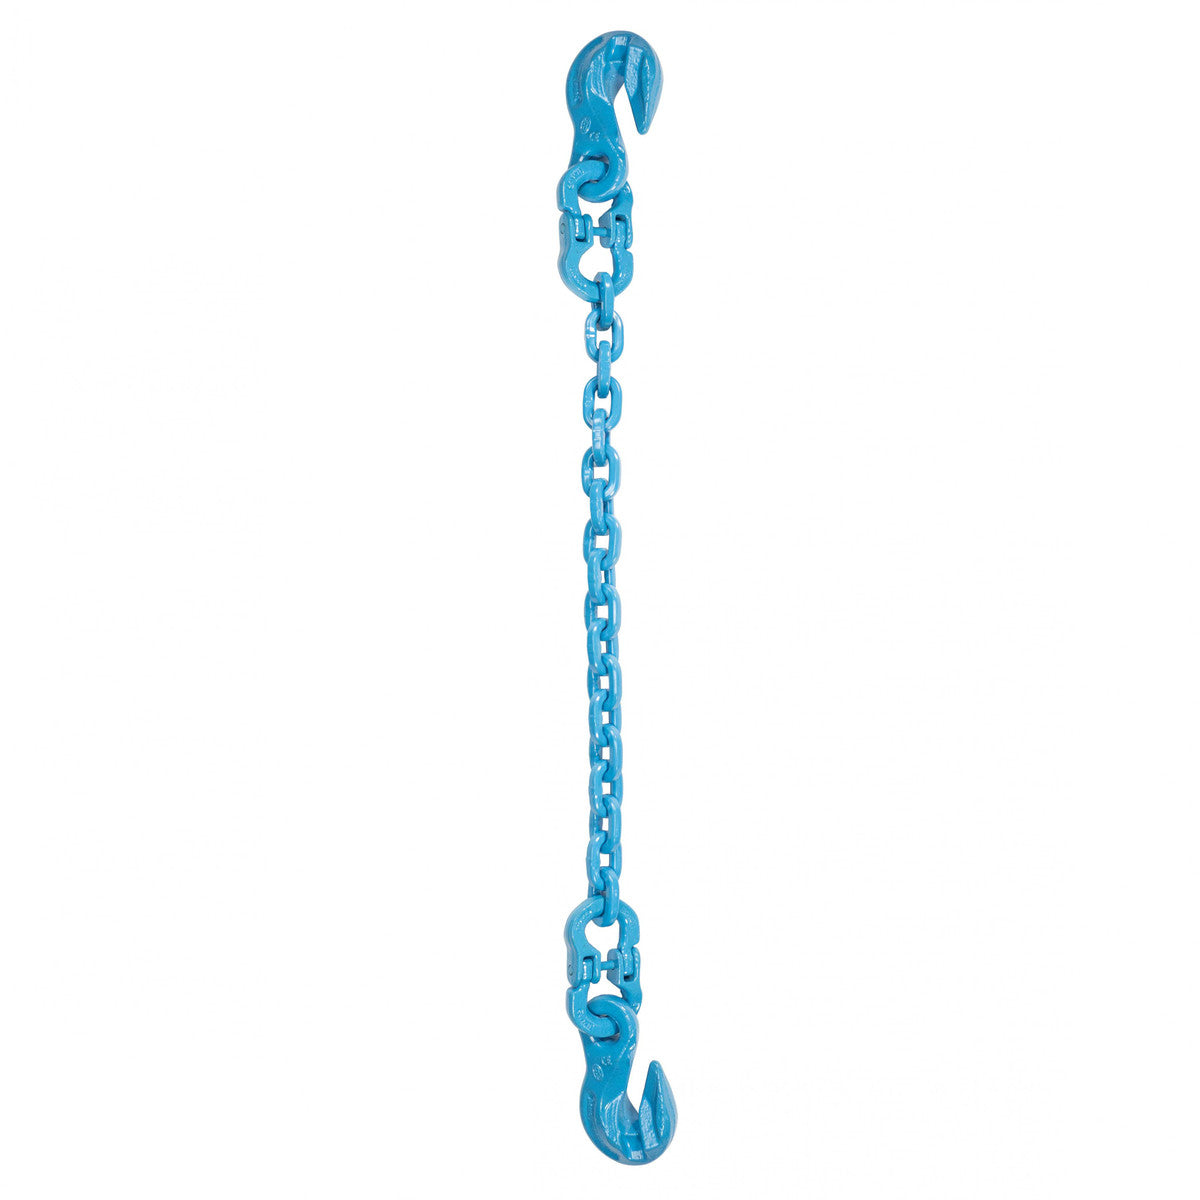 9/32" x 16' - Pewag Single Leg Chain Sling w/ Grab & Grab Hooks - Grade 120